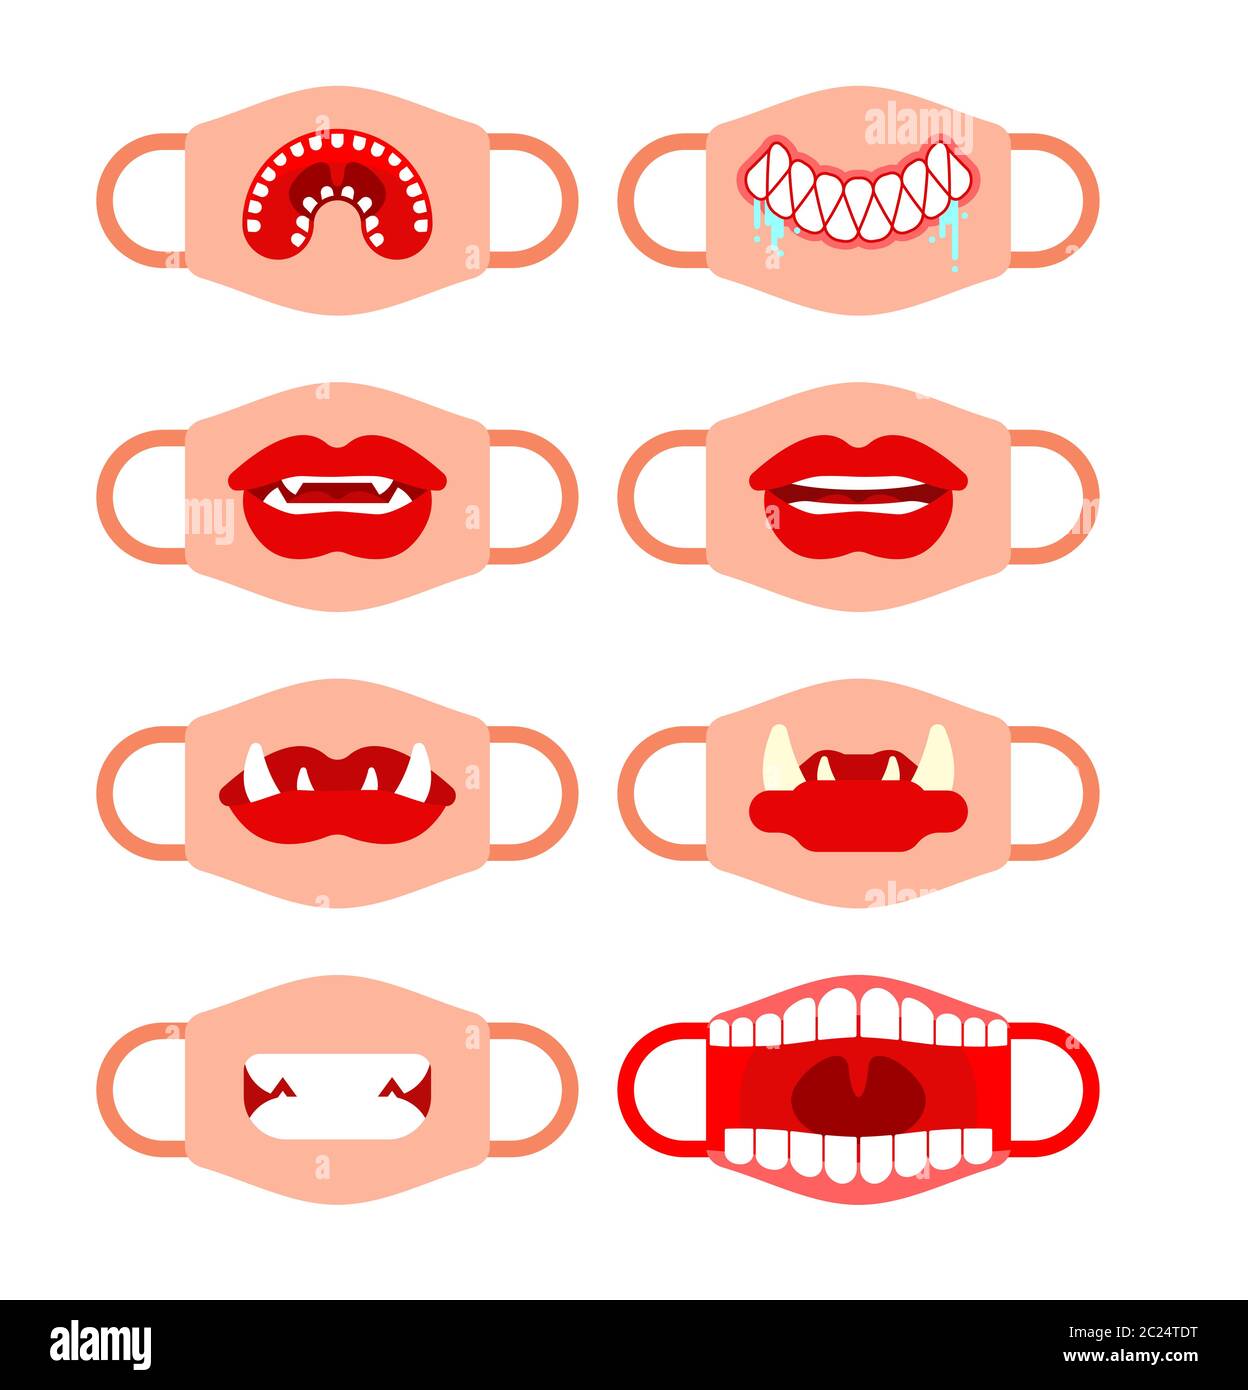 Schutzmaske Vorlage mit Mund-Set. Vampir Mund und weibliche Lippen.  Coronavirus-Schutz. Hausgemachte Maske Modell. Individuelle  Maskengestaltung mit Zähnen Stock-Vektorgrafik - Alamy